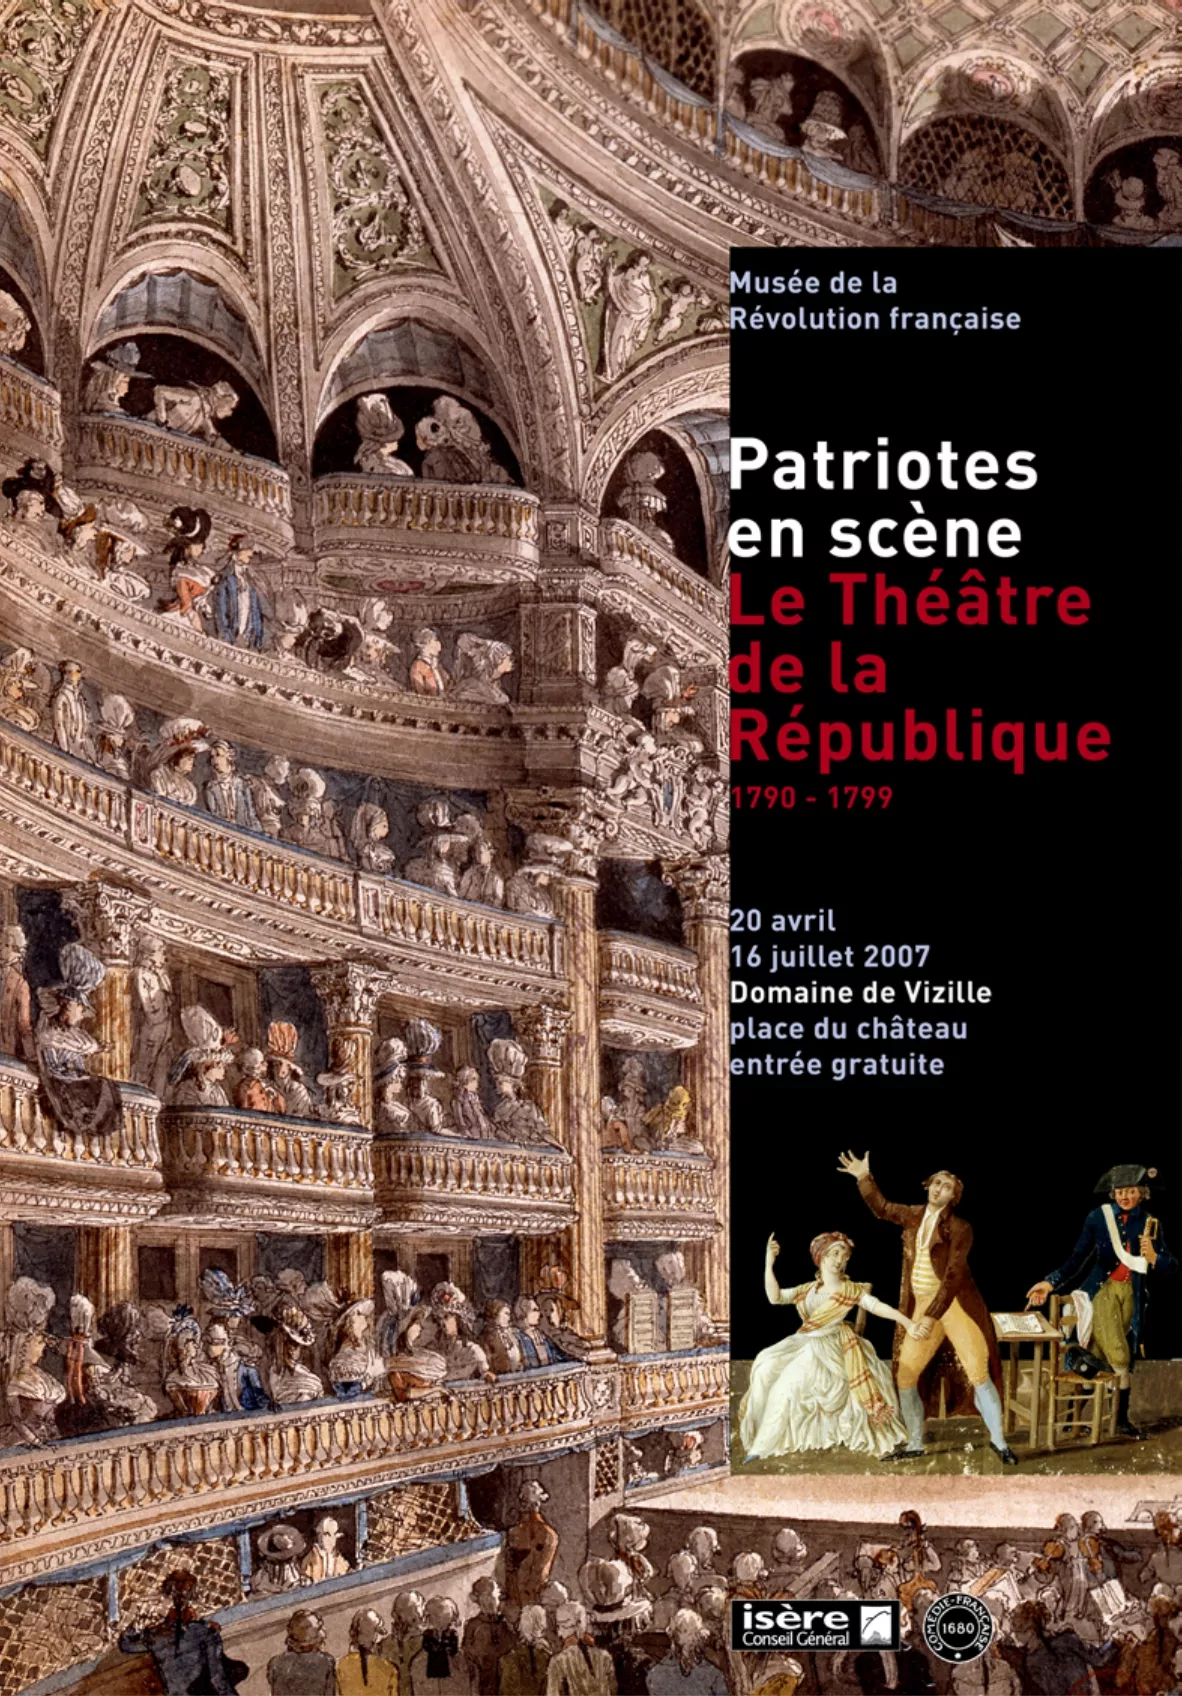 Affiche "Patriotes en scène" © Domaine de Vizille - Musée de la Révolution française / Département de l'Isère